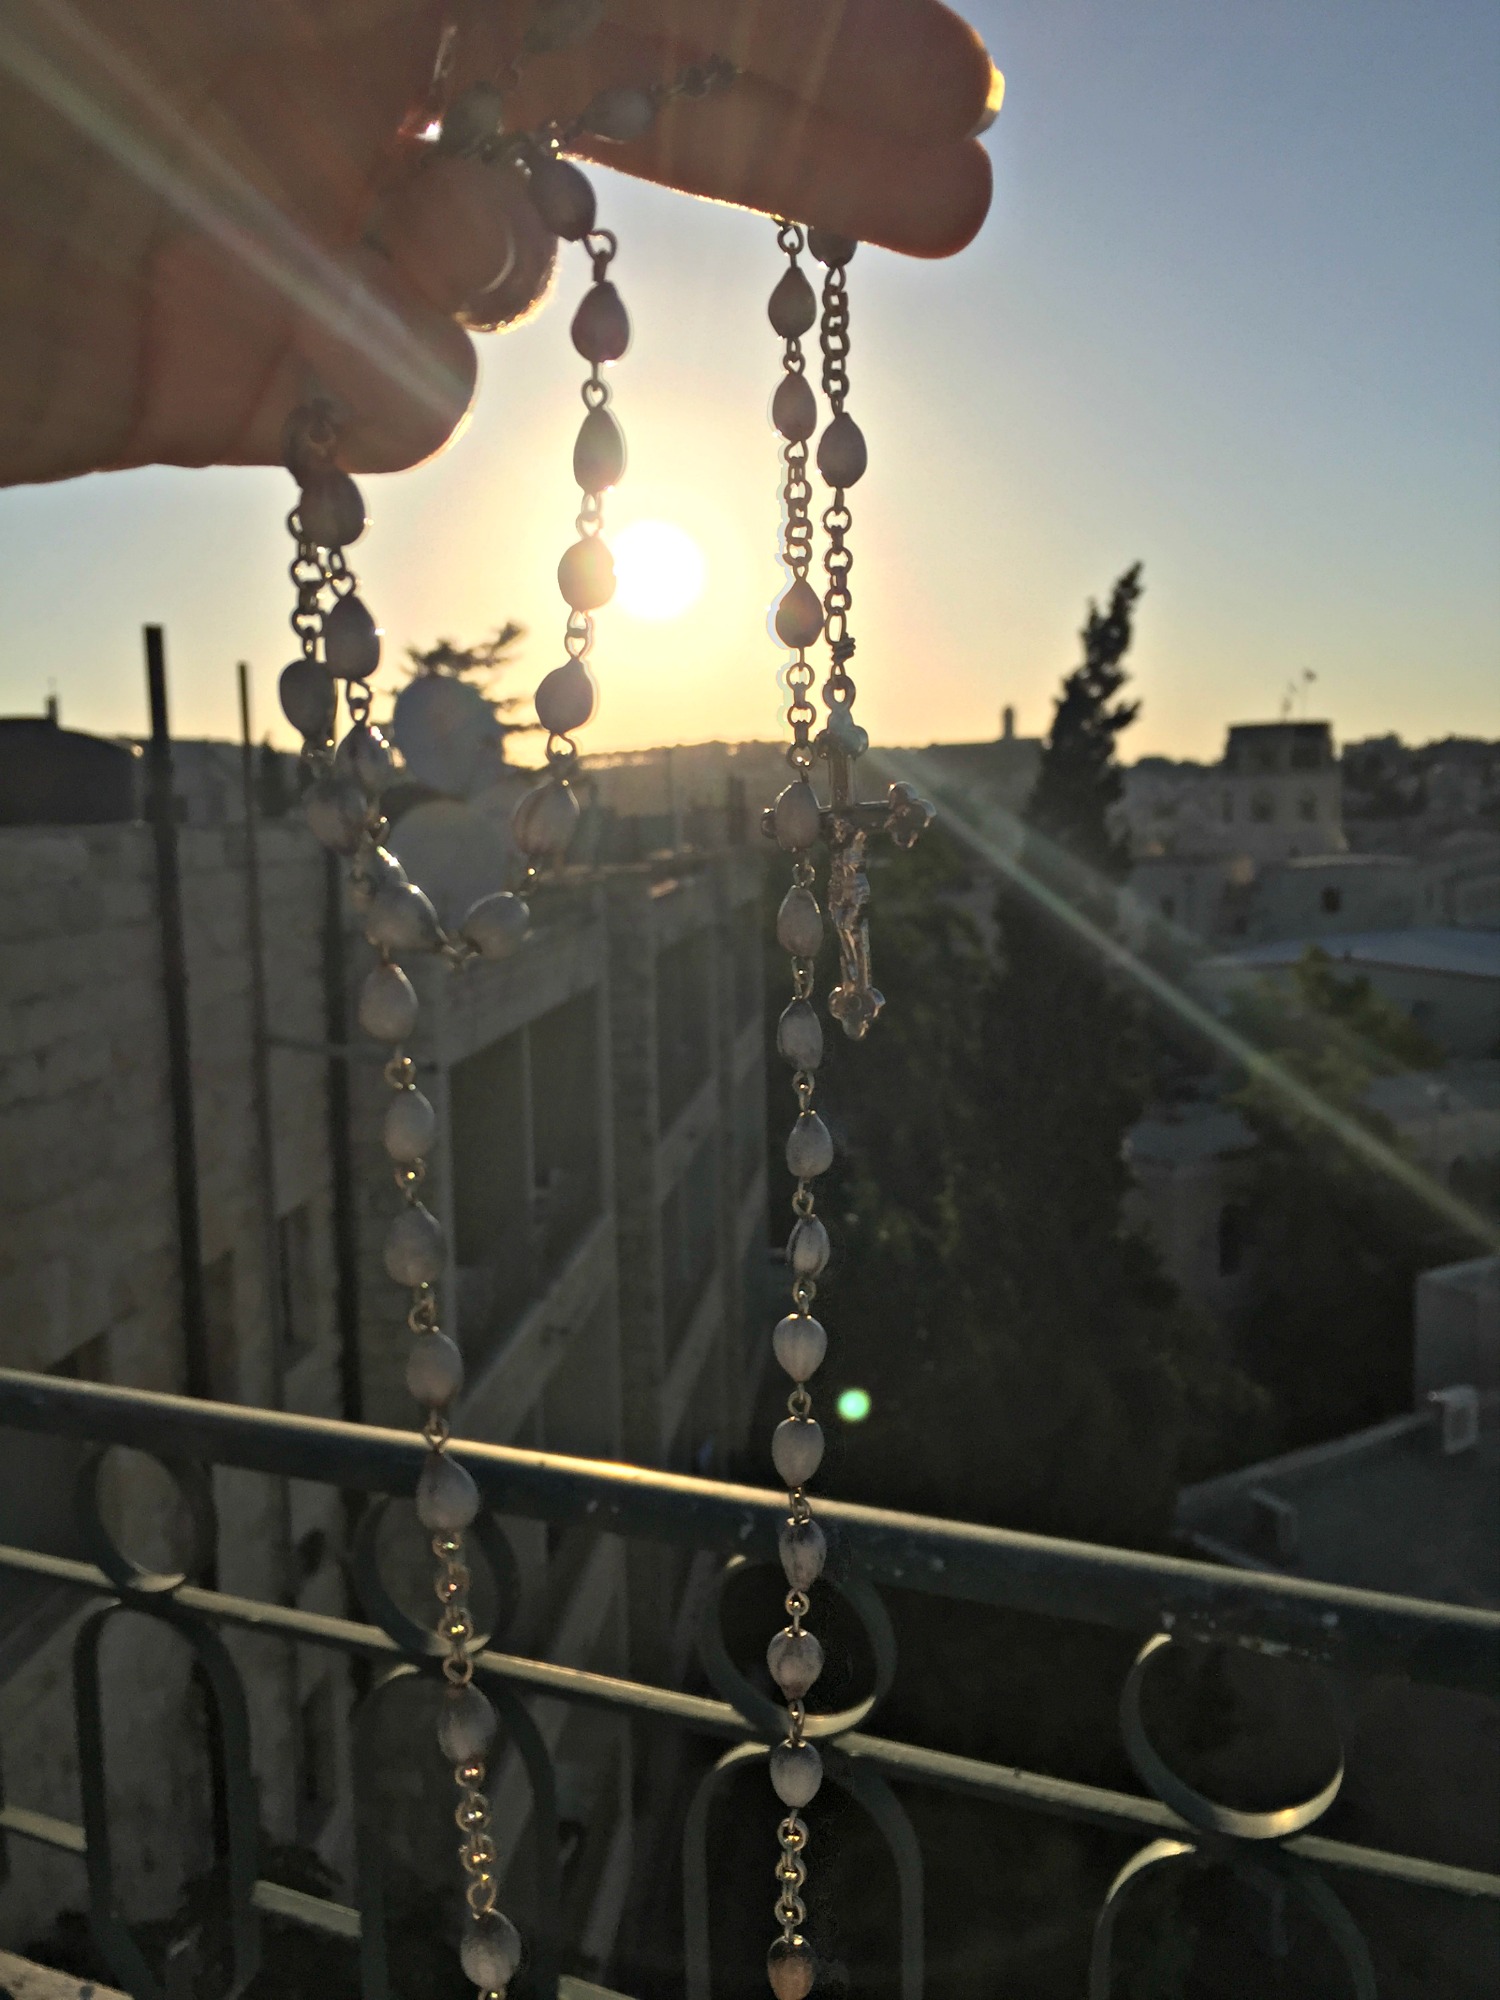 sunrise prayers